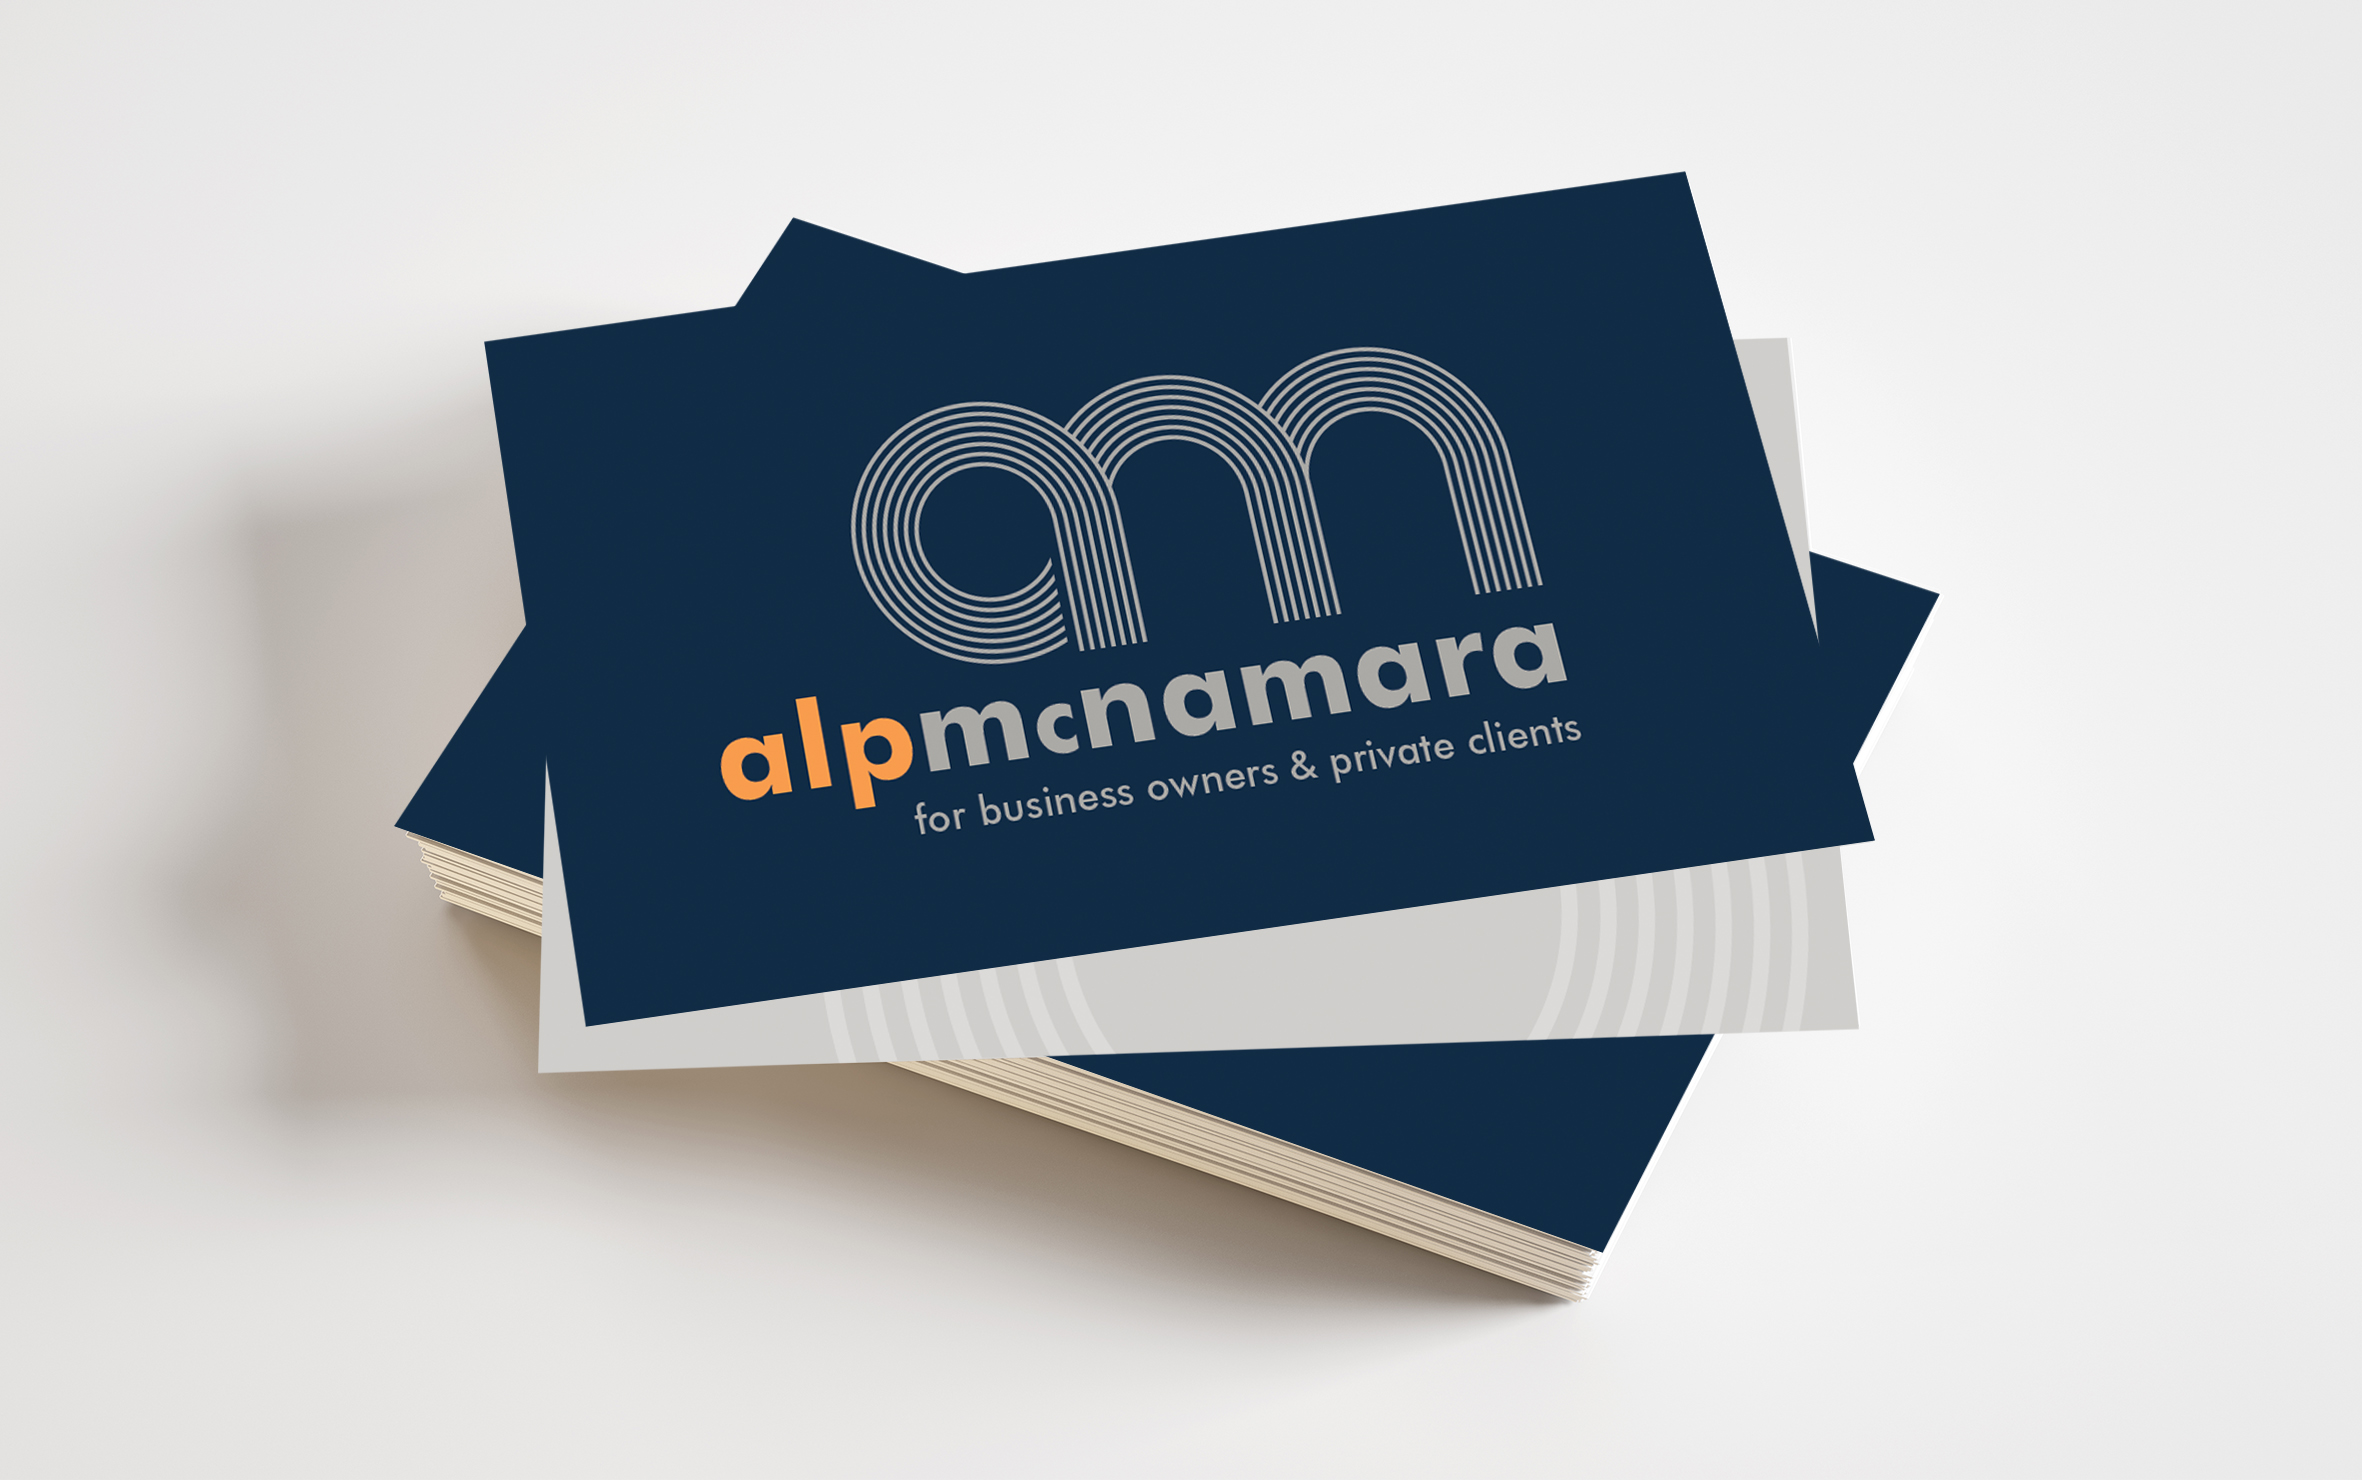 AlpMcNamara